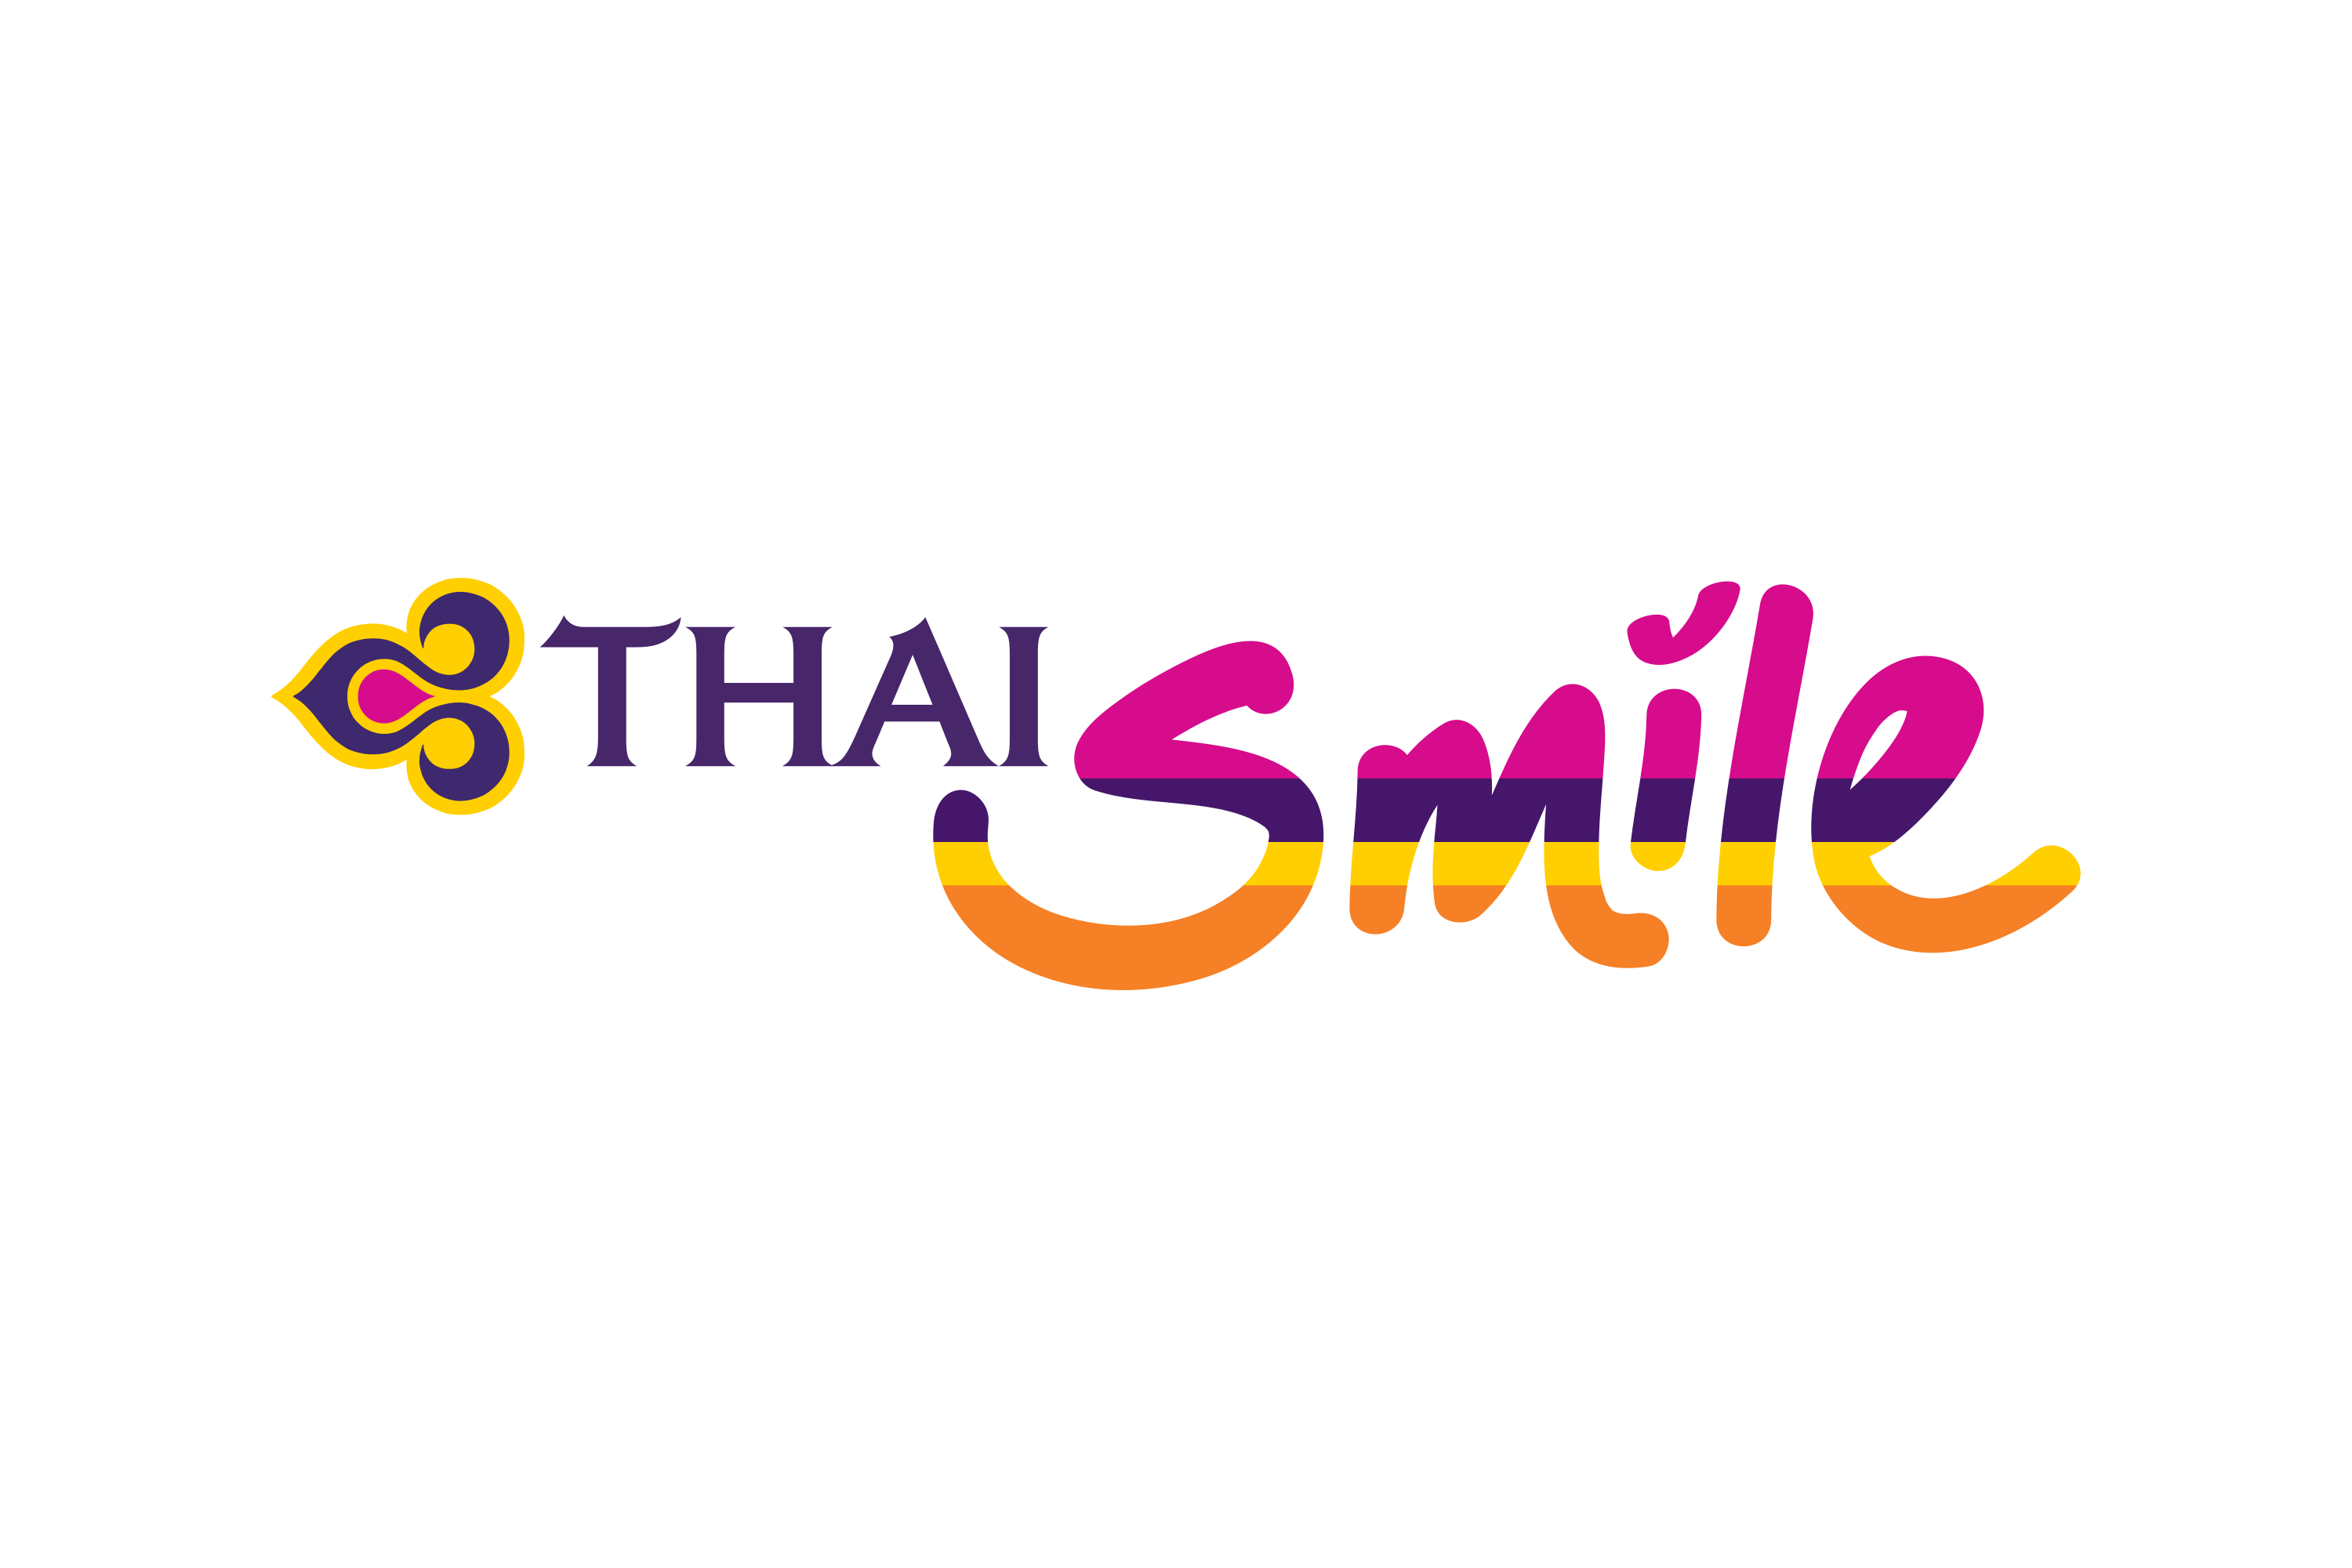 Download Thai Smile Logo in SVG Vector or PNG File Format - Logo.wine